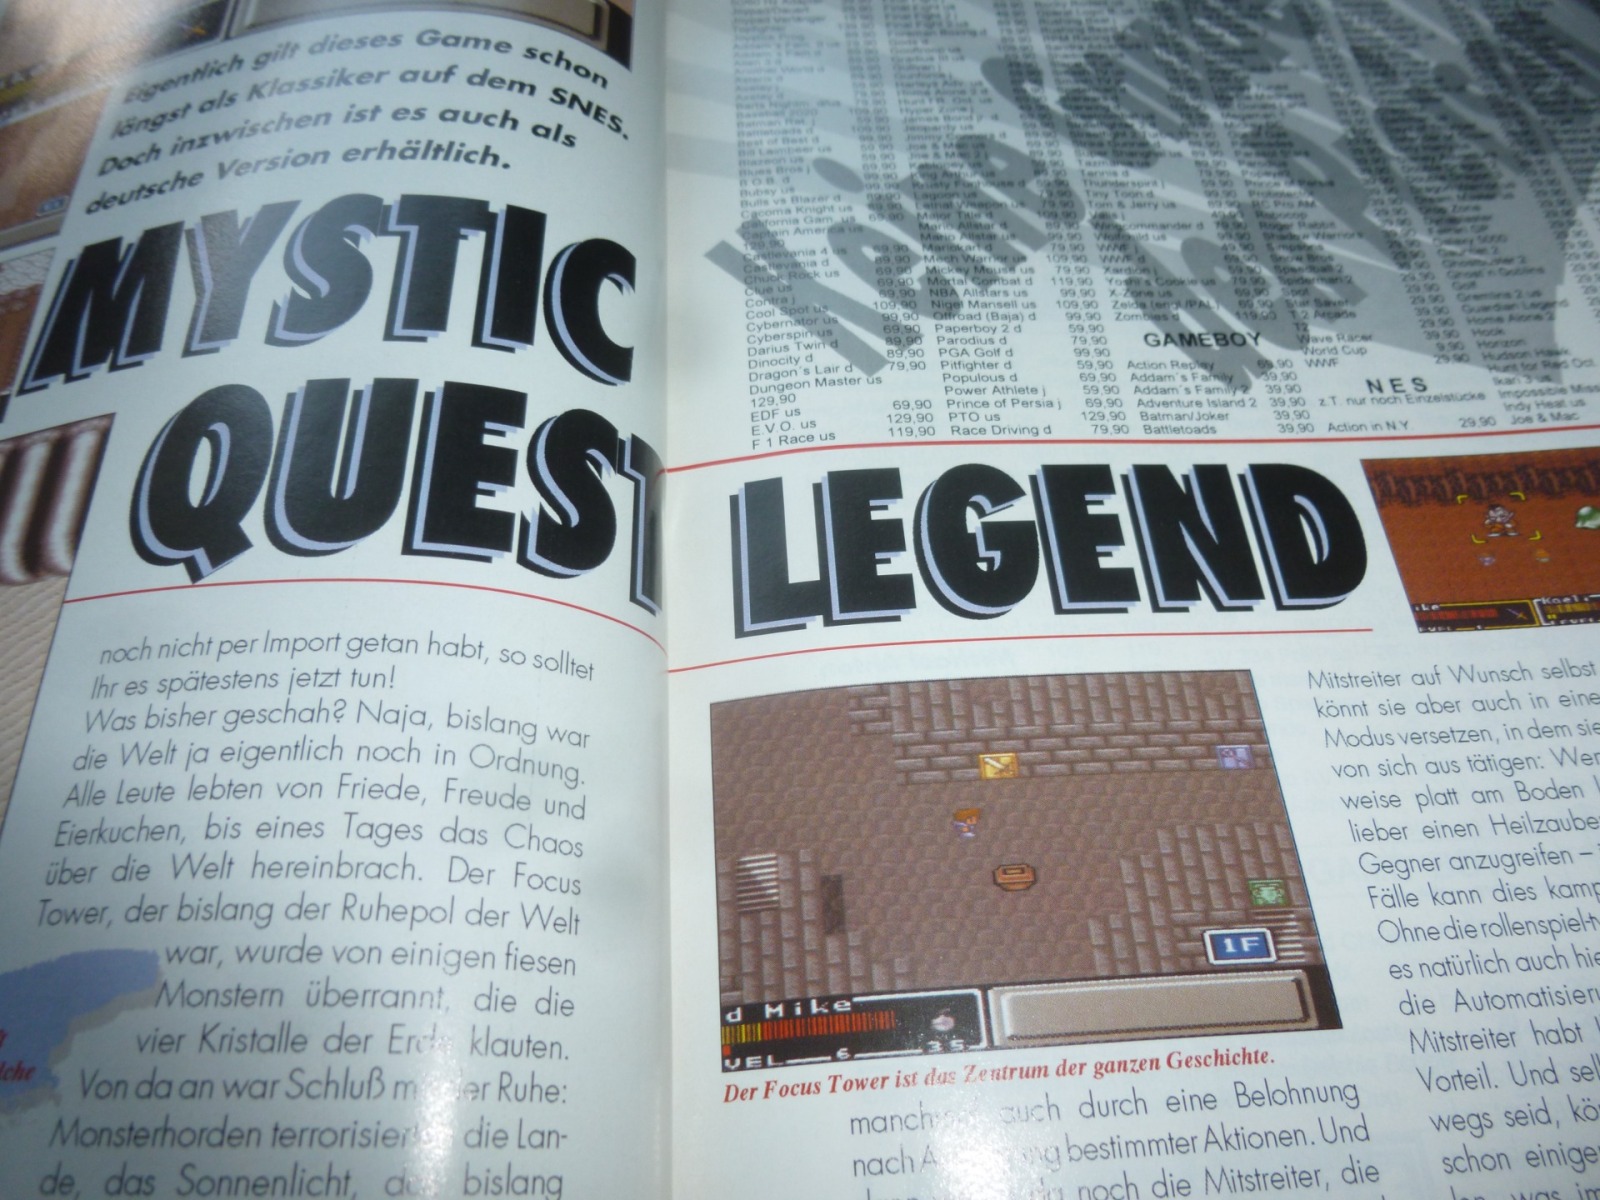 TOTAL Das unabhängige Magazin - 100% Nintendo - Ausgabe 12/93 1993 19